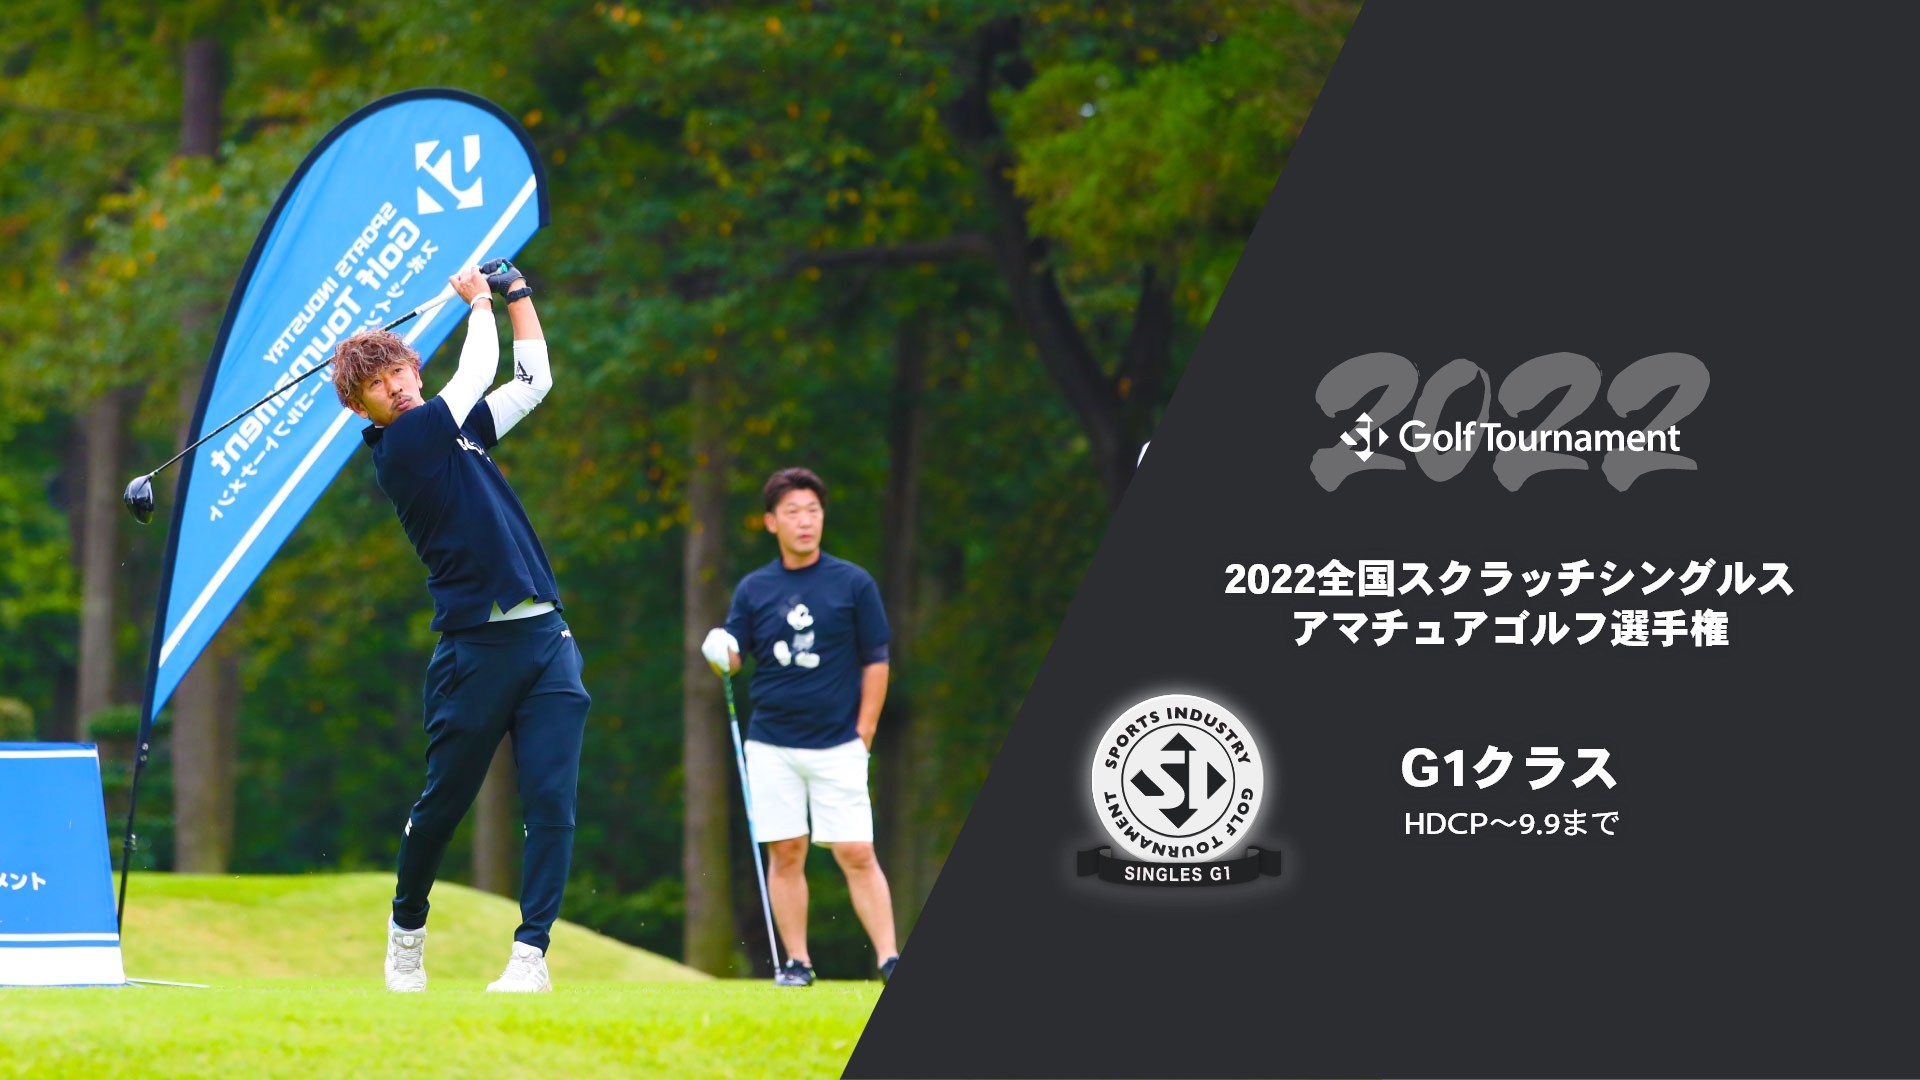 2022全国スクランブルアマチュアゴルフ選手権_シングルス戦G1クラス